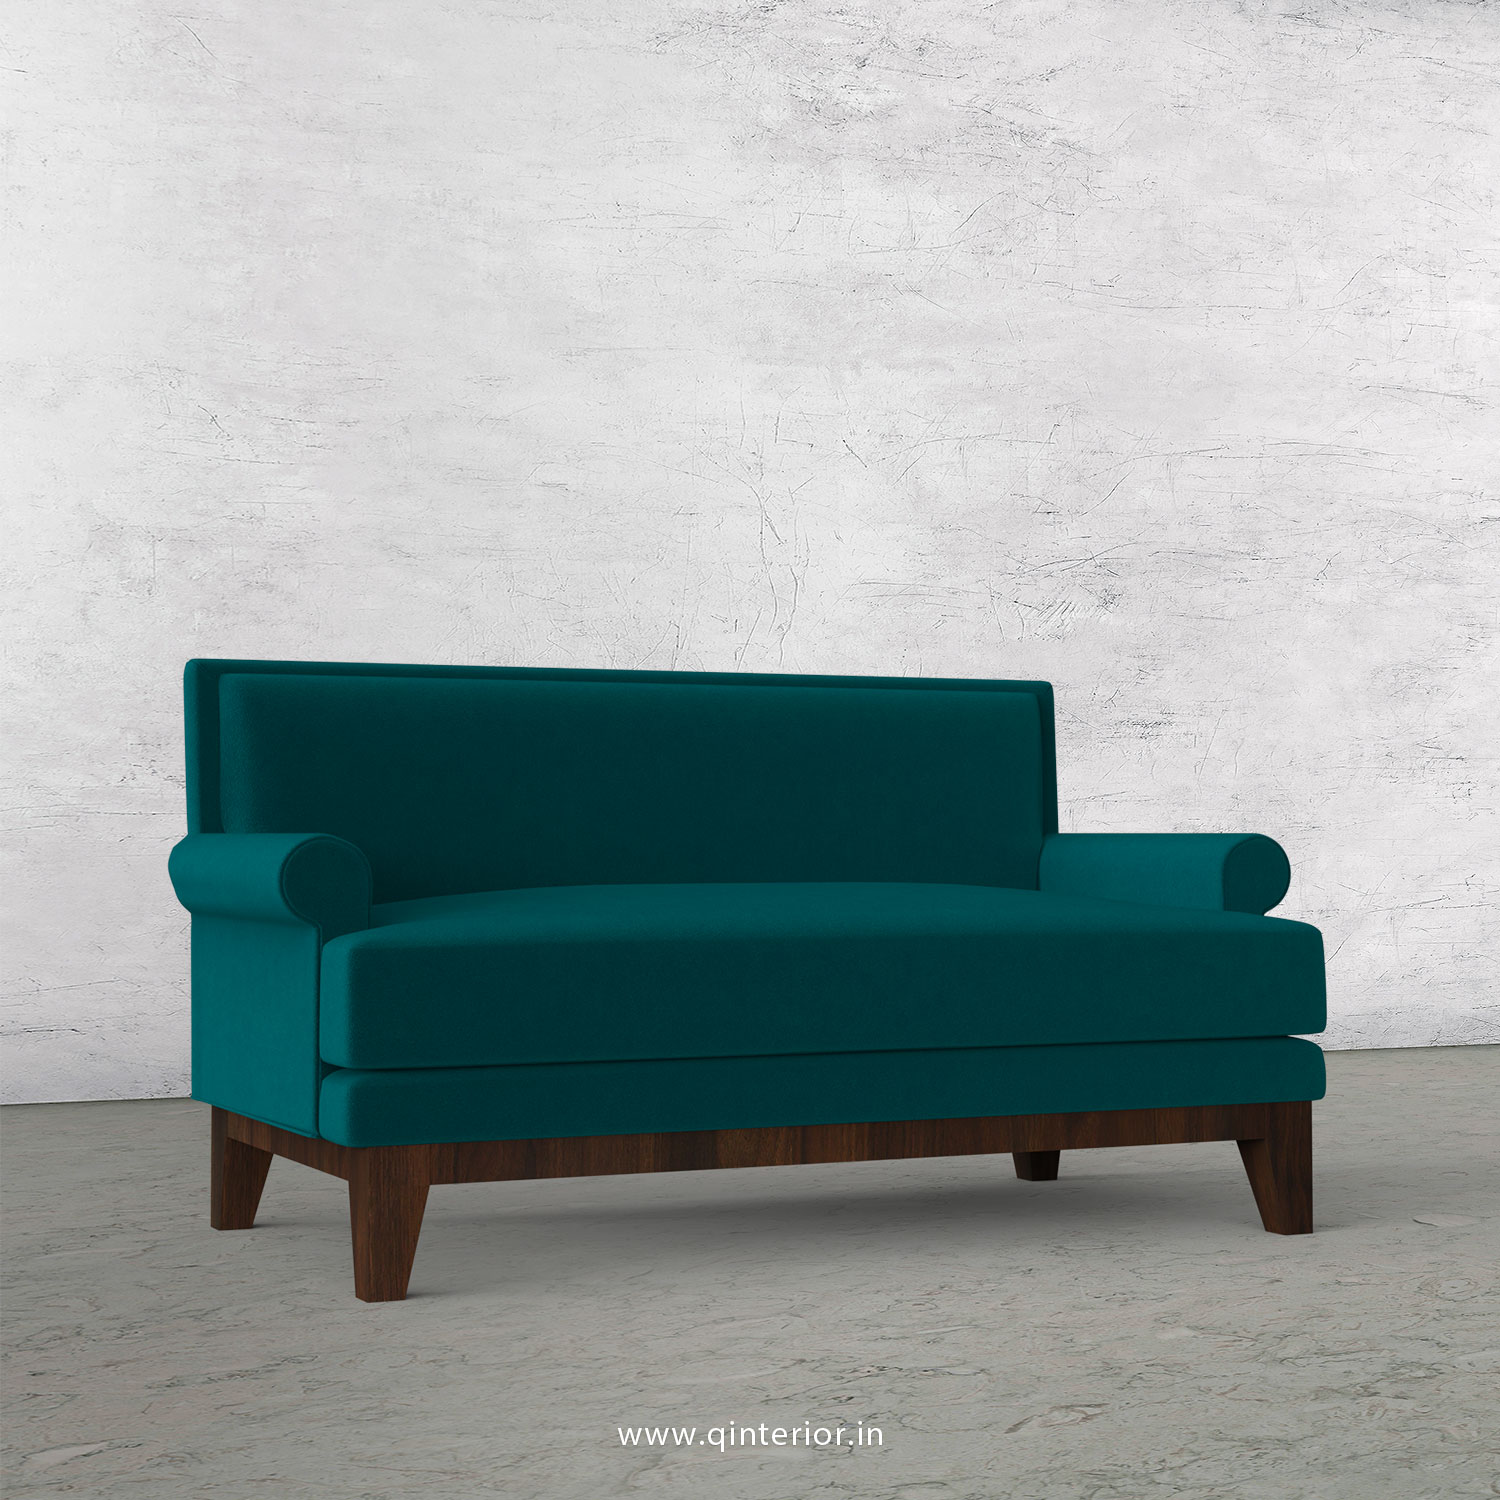 Aviana 2 Seater Sofa in Velvet Fabric - SFA001 VL13